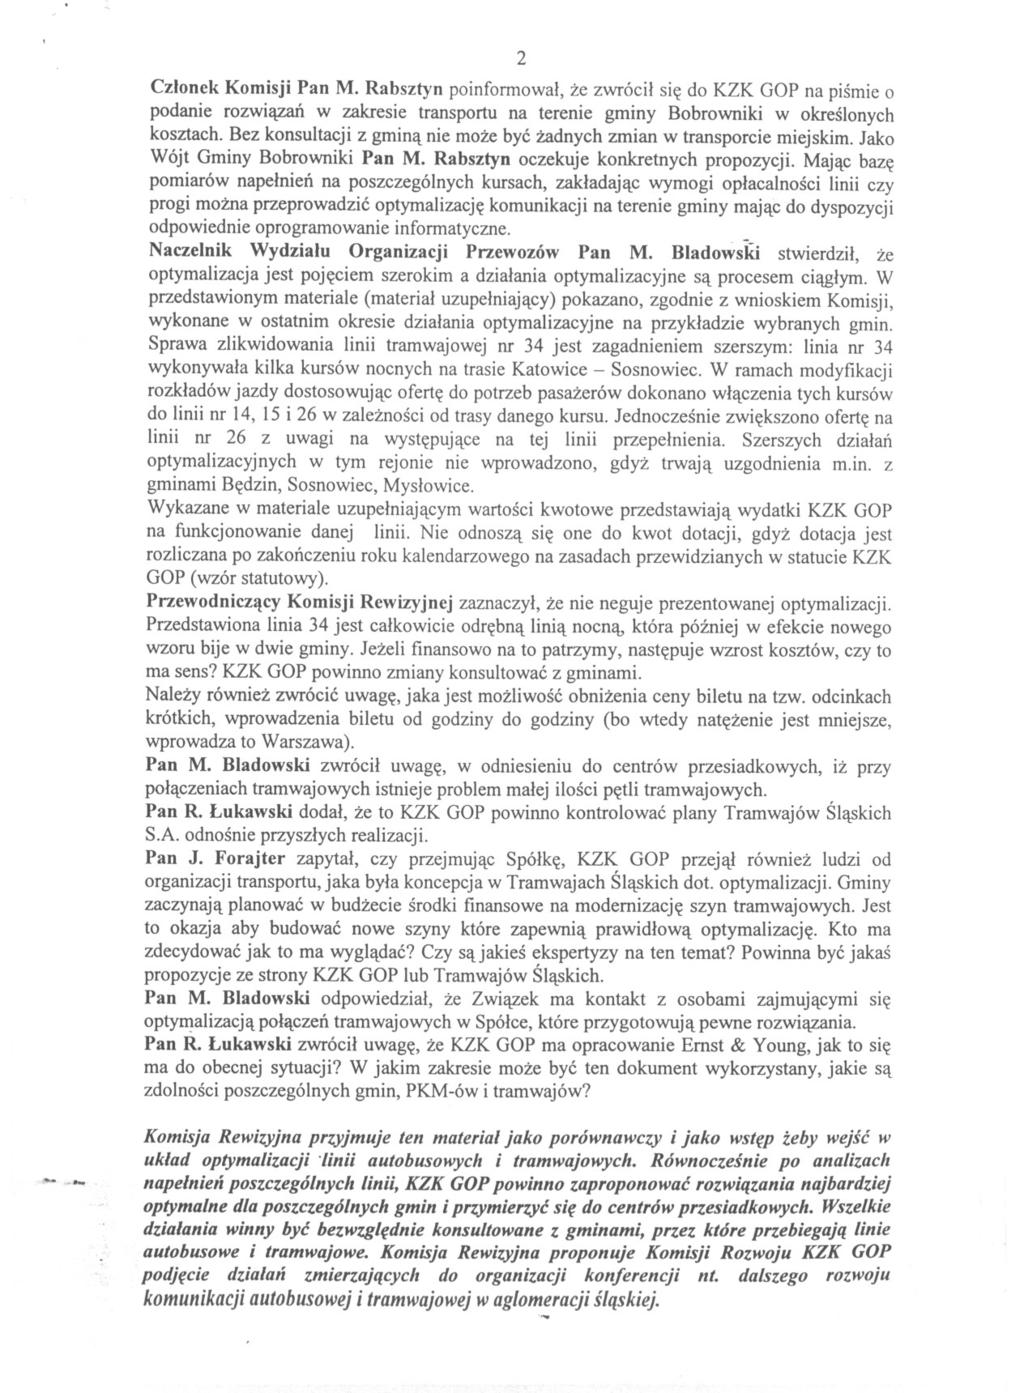 2 Czlonek Komisji Pan M. Rabsztyn poinfonnowal, ze zwrócil sie do KZK GOP na pismie o podanie rozwiazan w zakresie transportu na terenie gminy Bobrowniki w okreslonych kosztach.